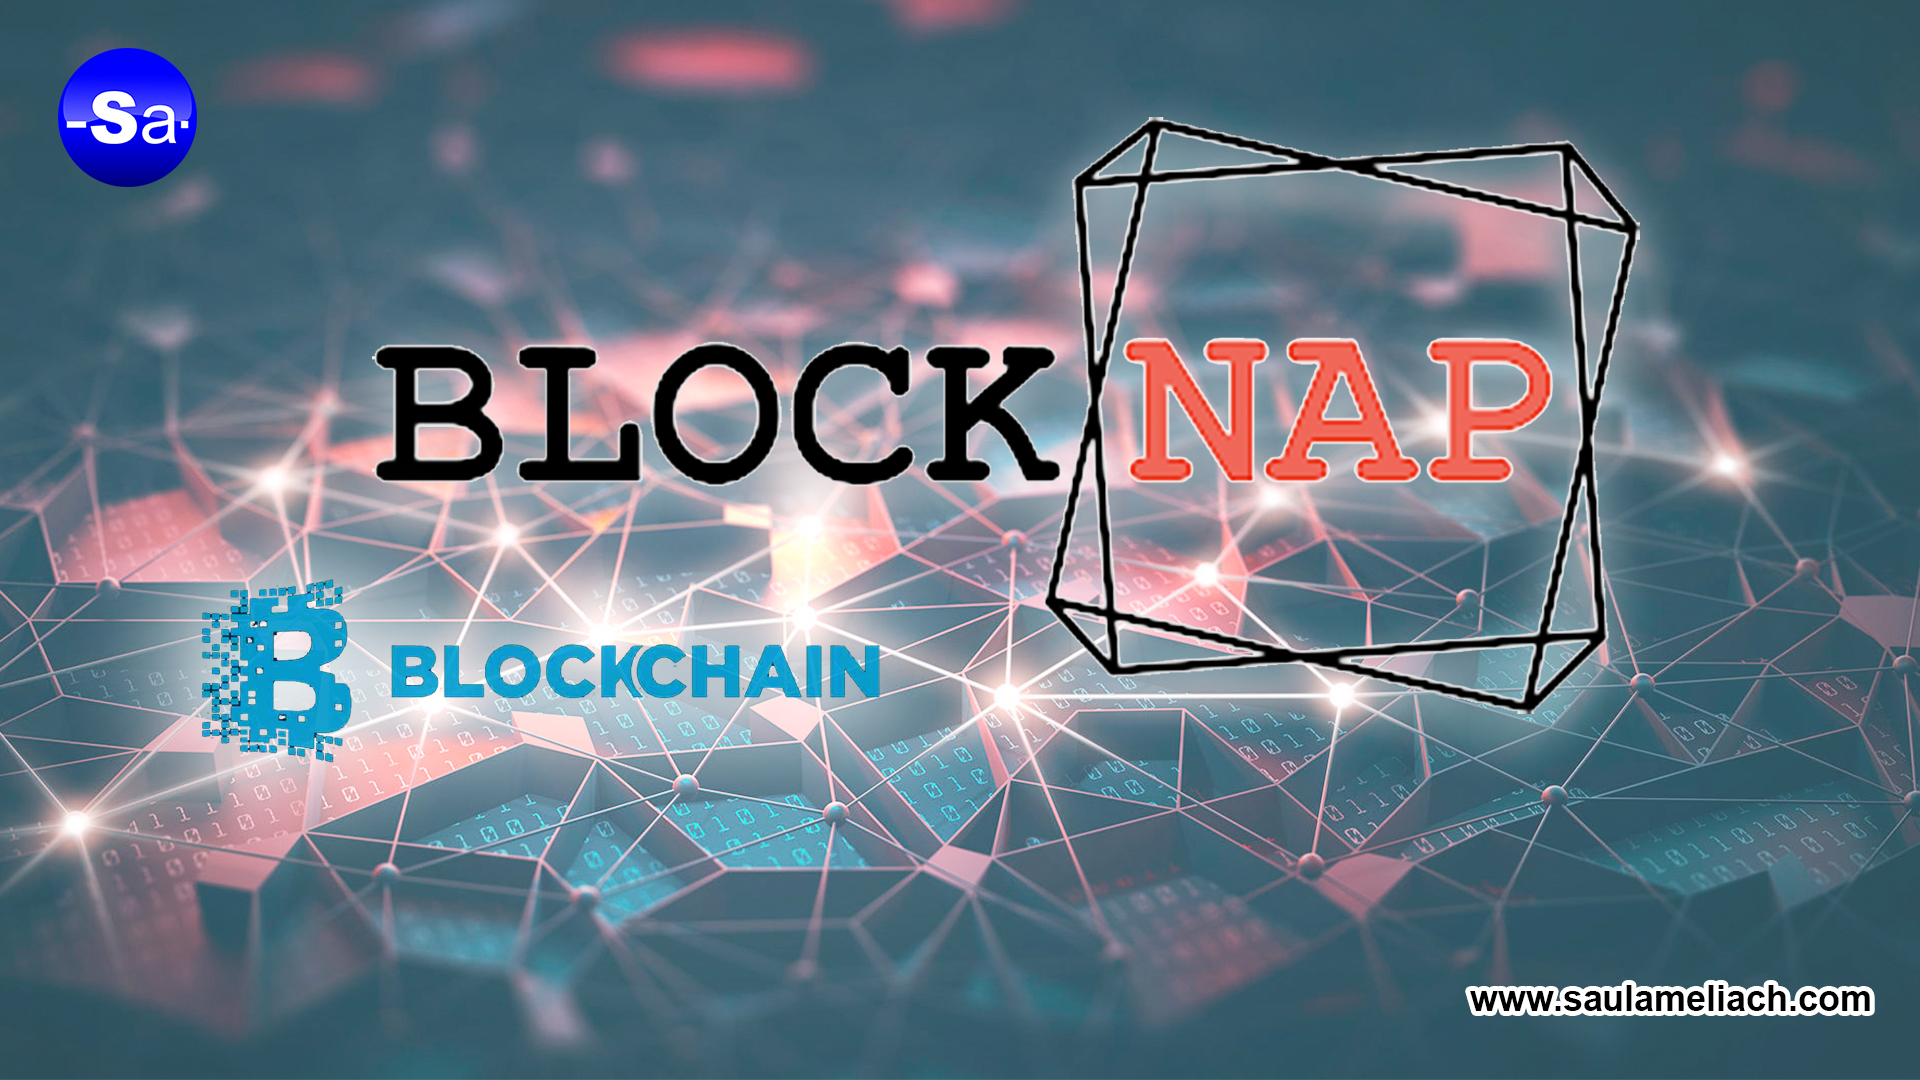 Blocknap ayuda a crear contratos inteligentes con tecnología Blockchain